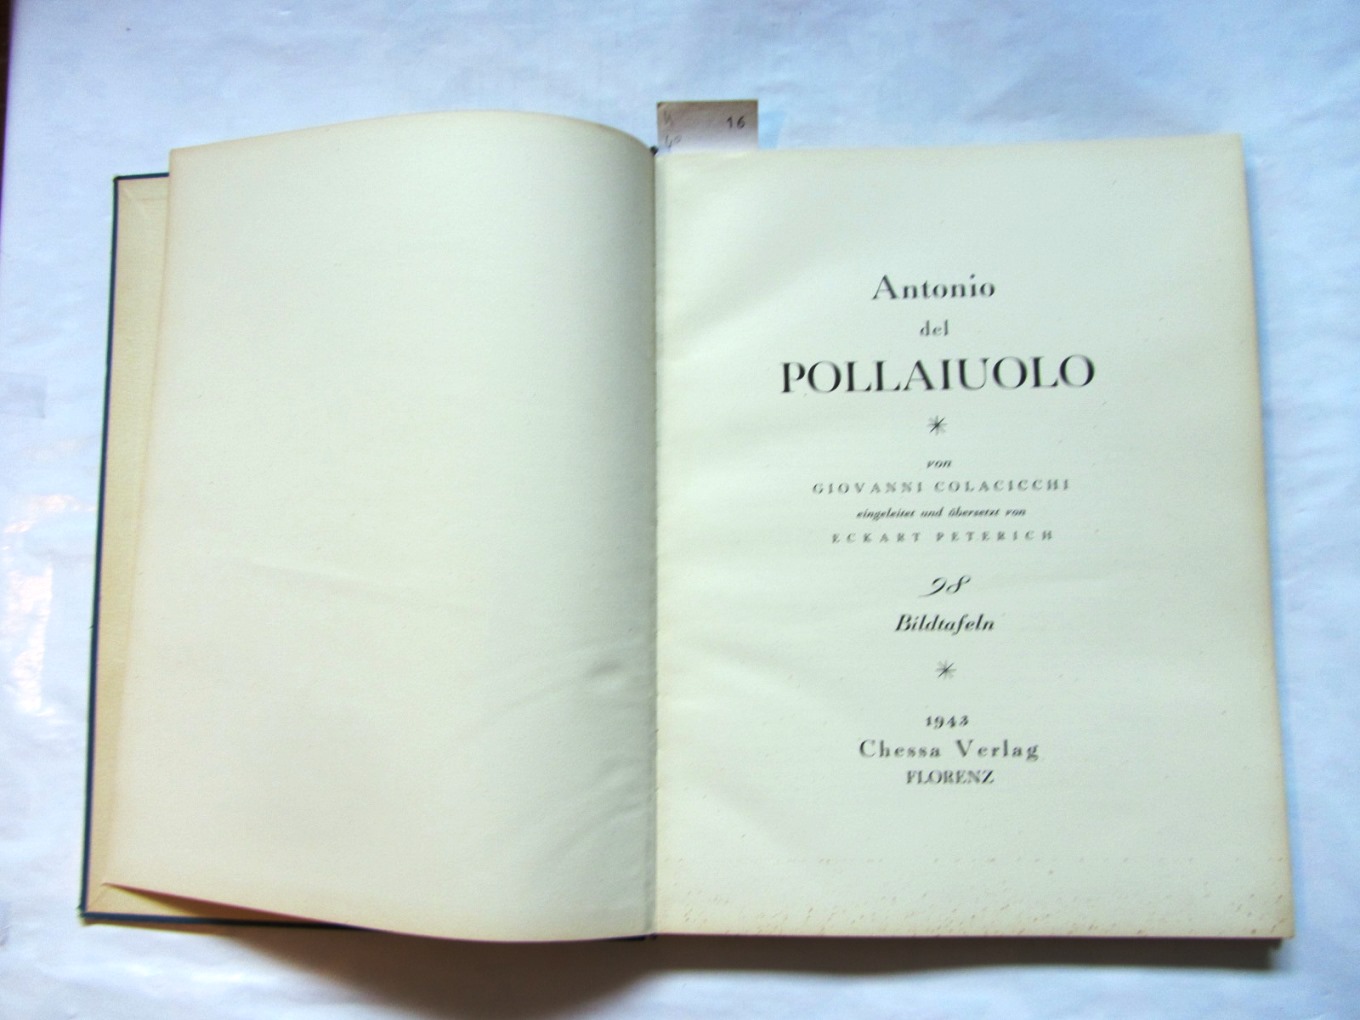 Colacicchi, Giovanni:  Antonio del Pollaiuolo. Eingeleitet und übersetzt von Eckart Peterich. ("Sammlung Astarte", I.) 